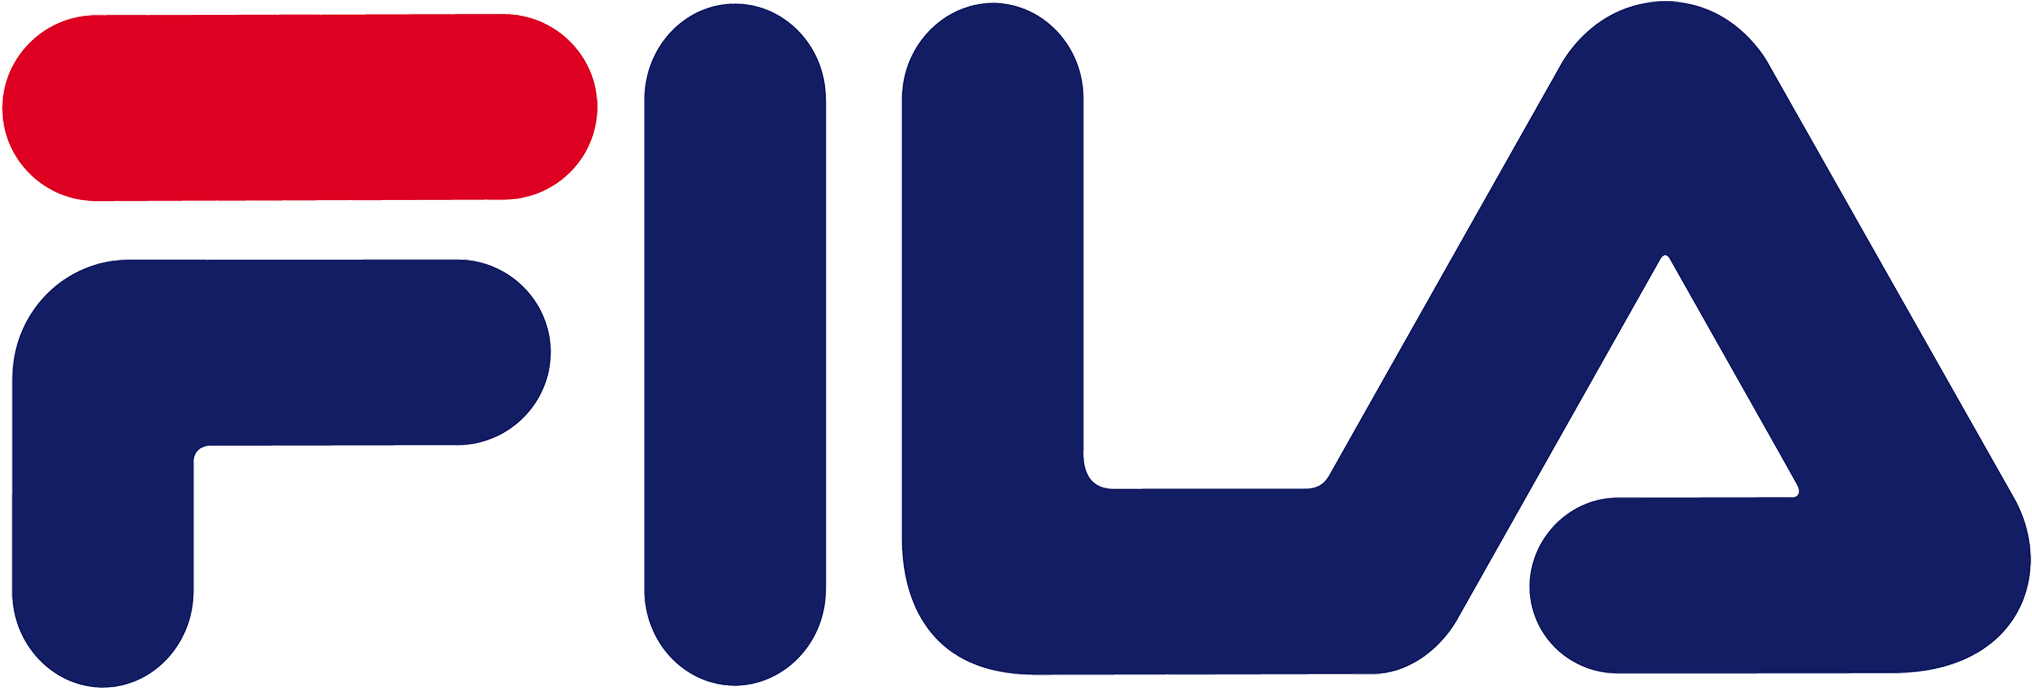 Логотип Fila (Фила)